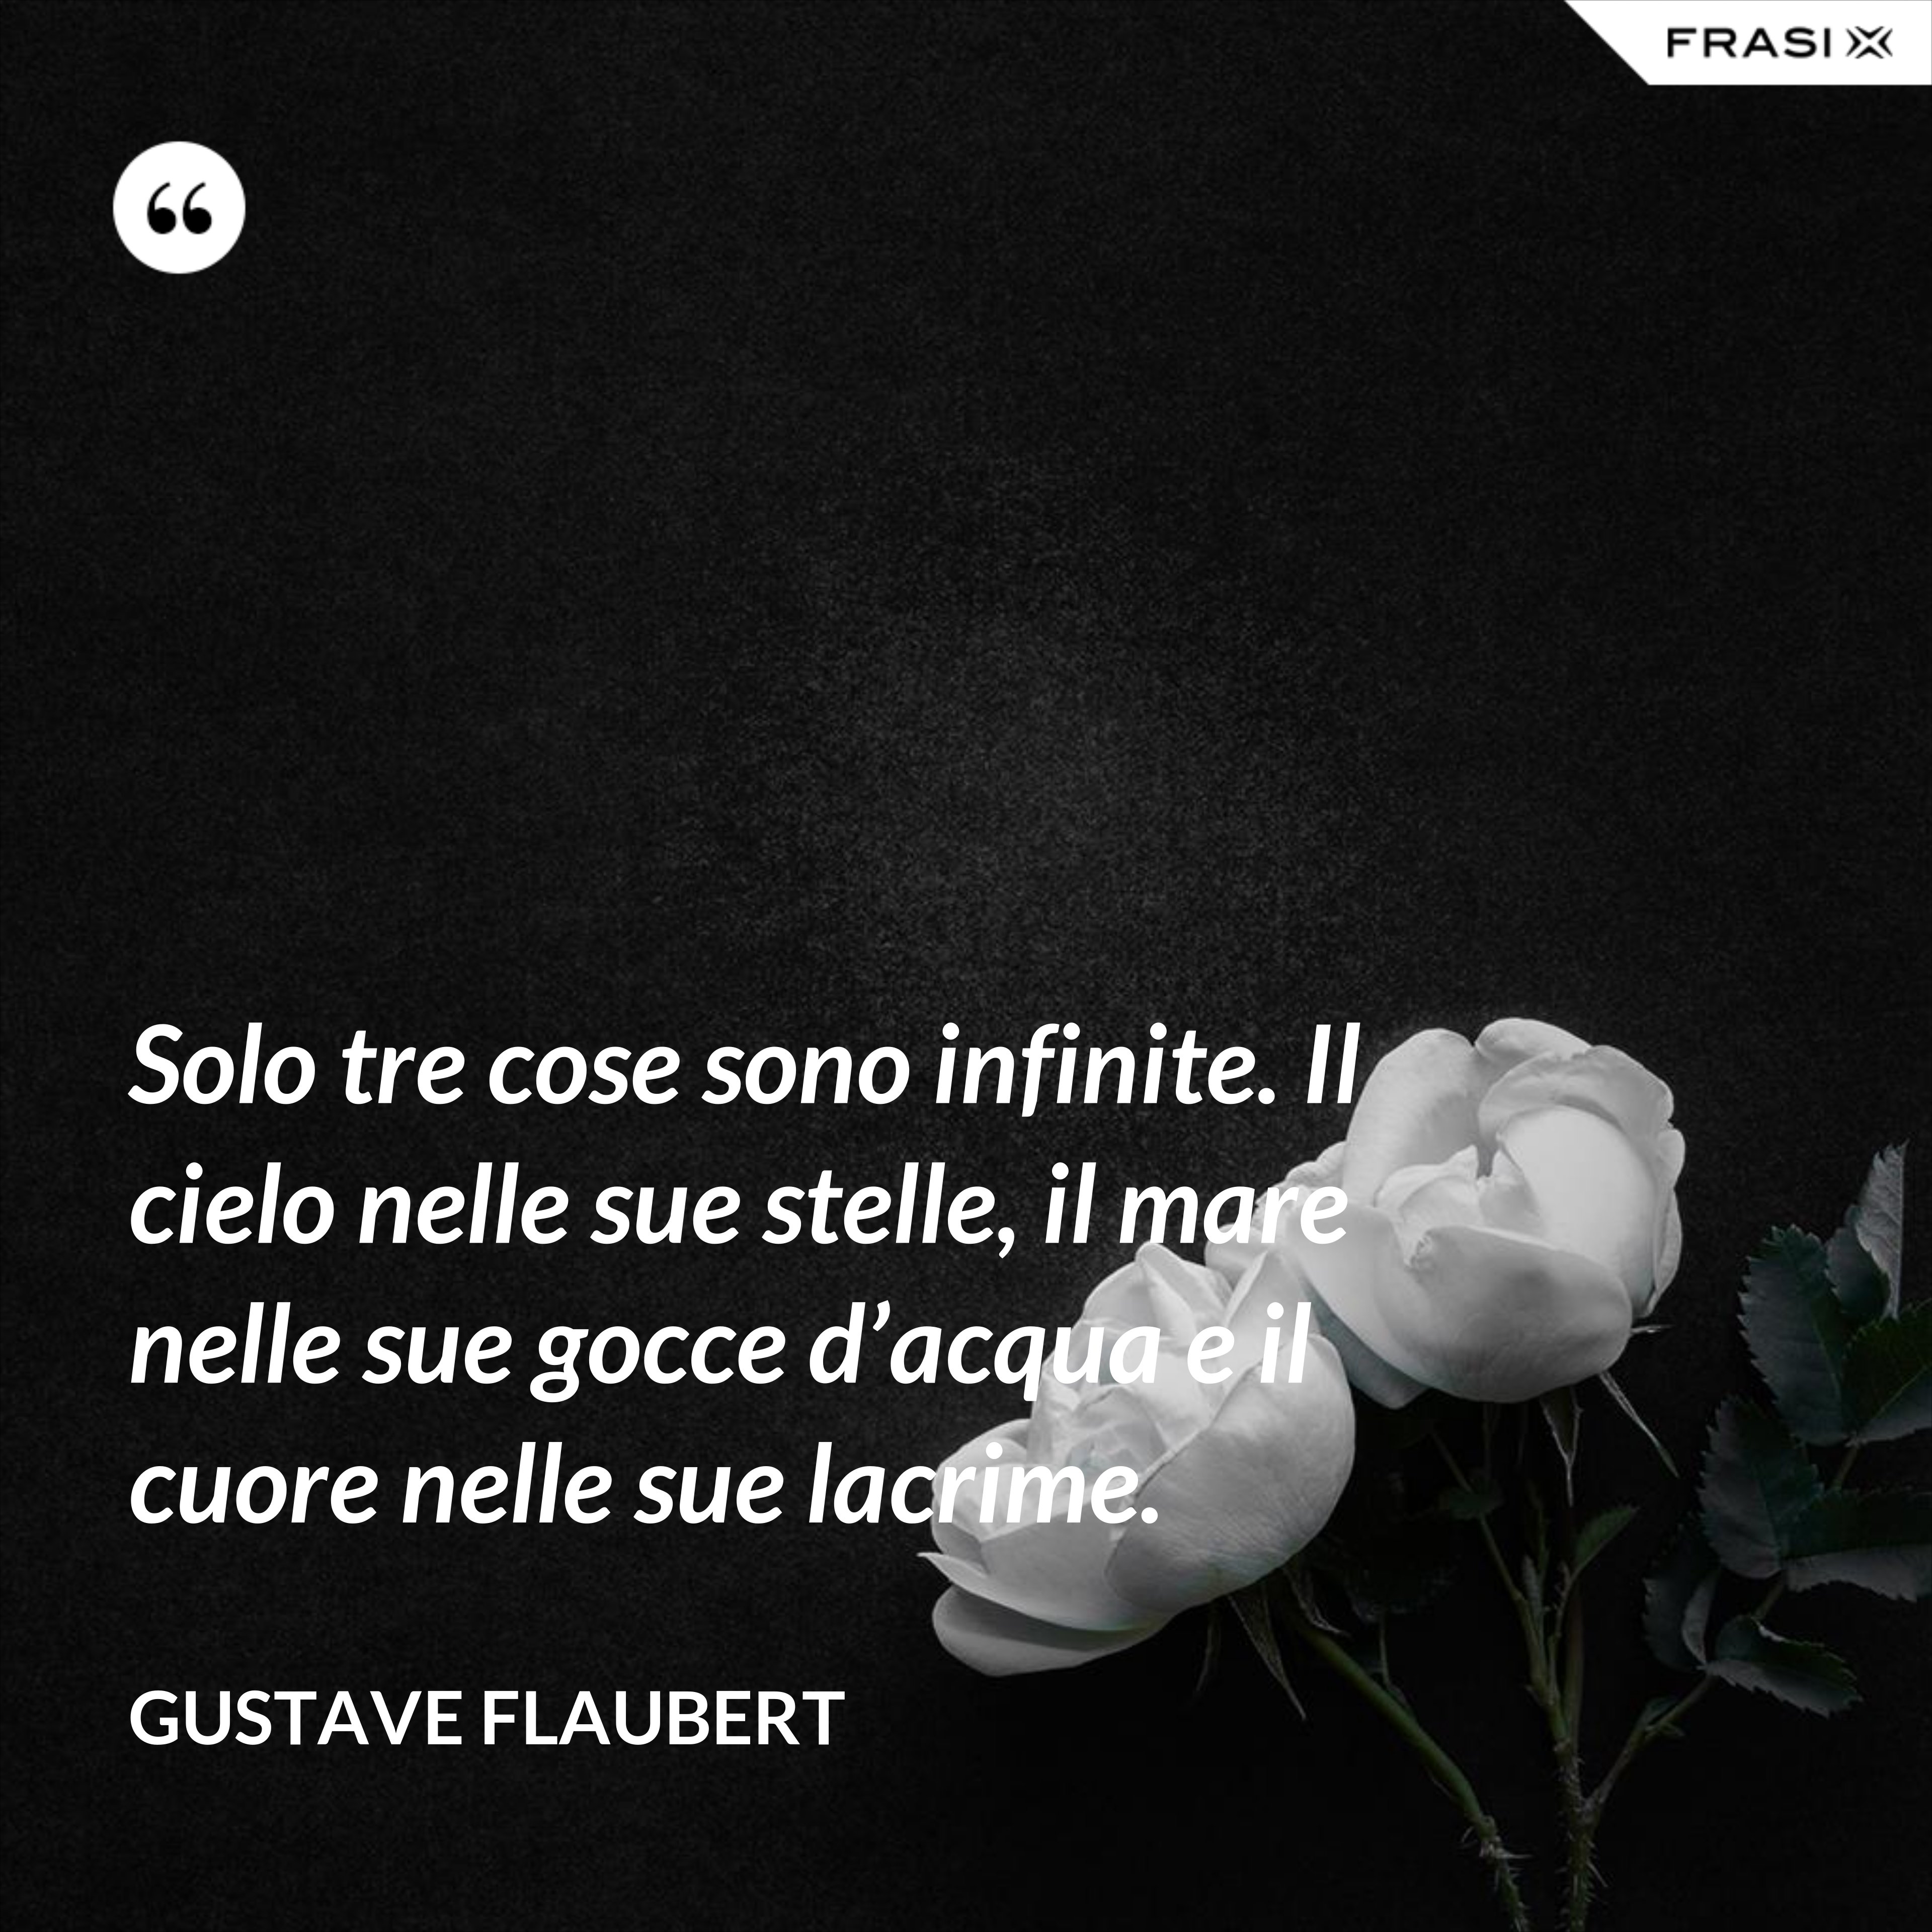 Solo tre cose sono infinite. Il cielo nelle sue stelle, il mare nelle sue gocce d’acqua e il cuore nelle sue lacrime. - Gustave Flaubert